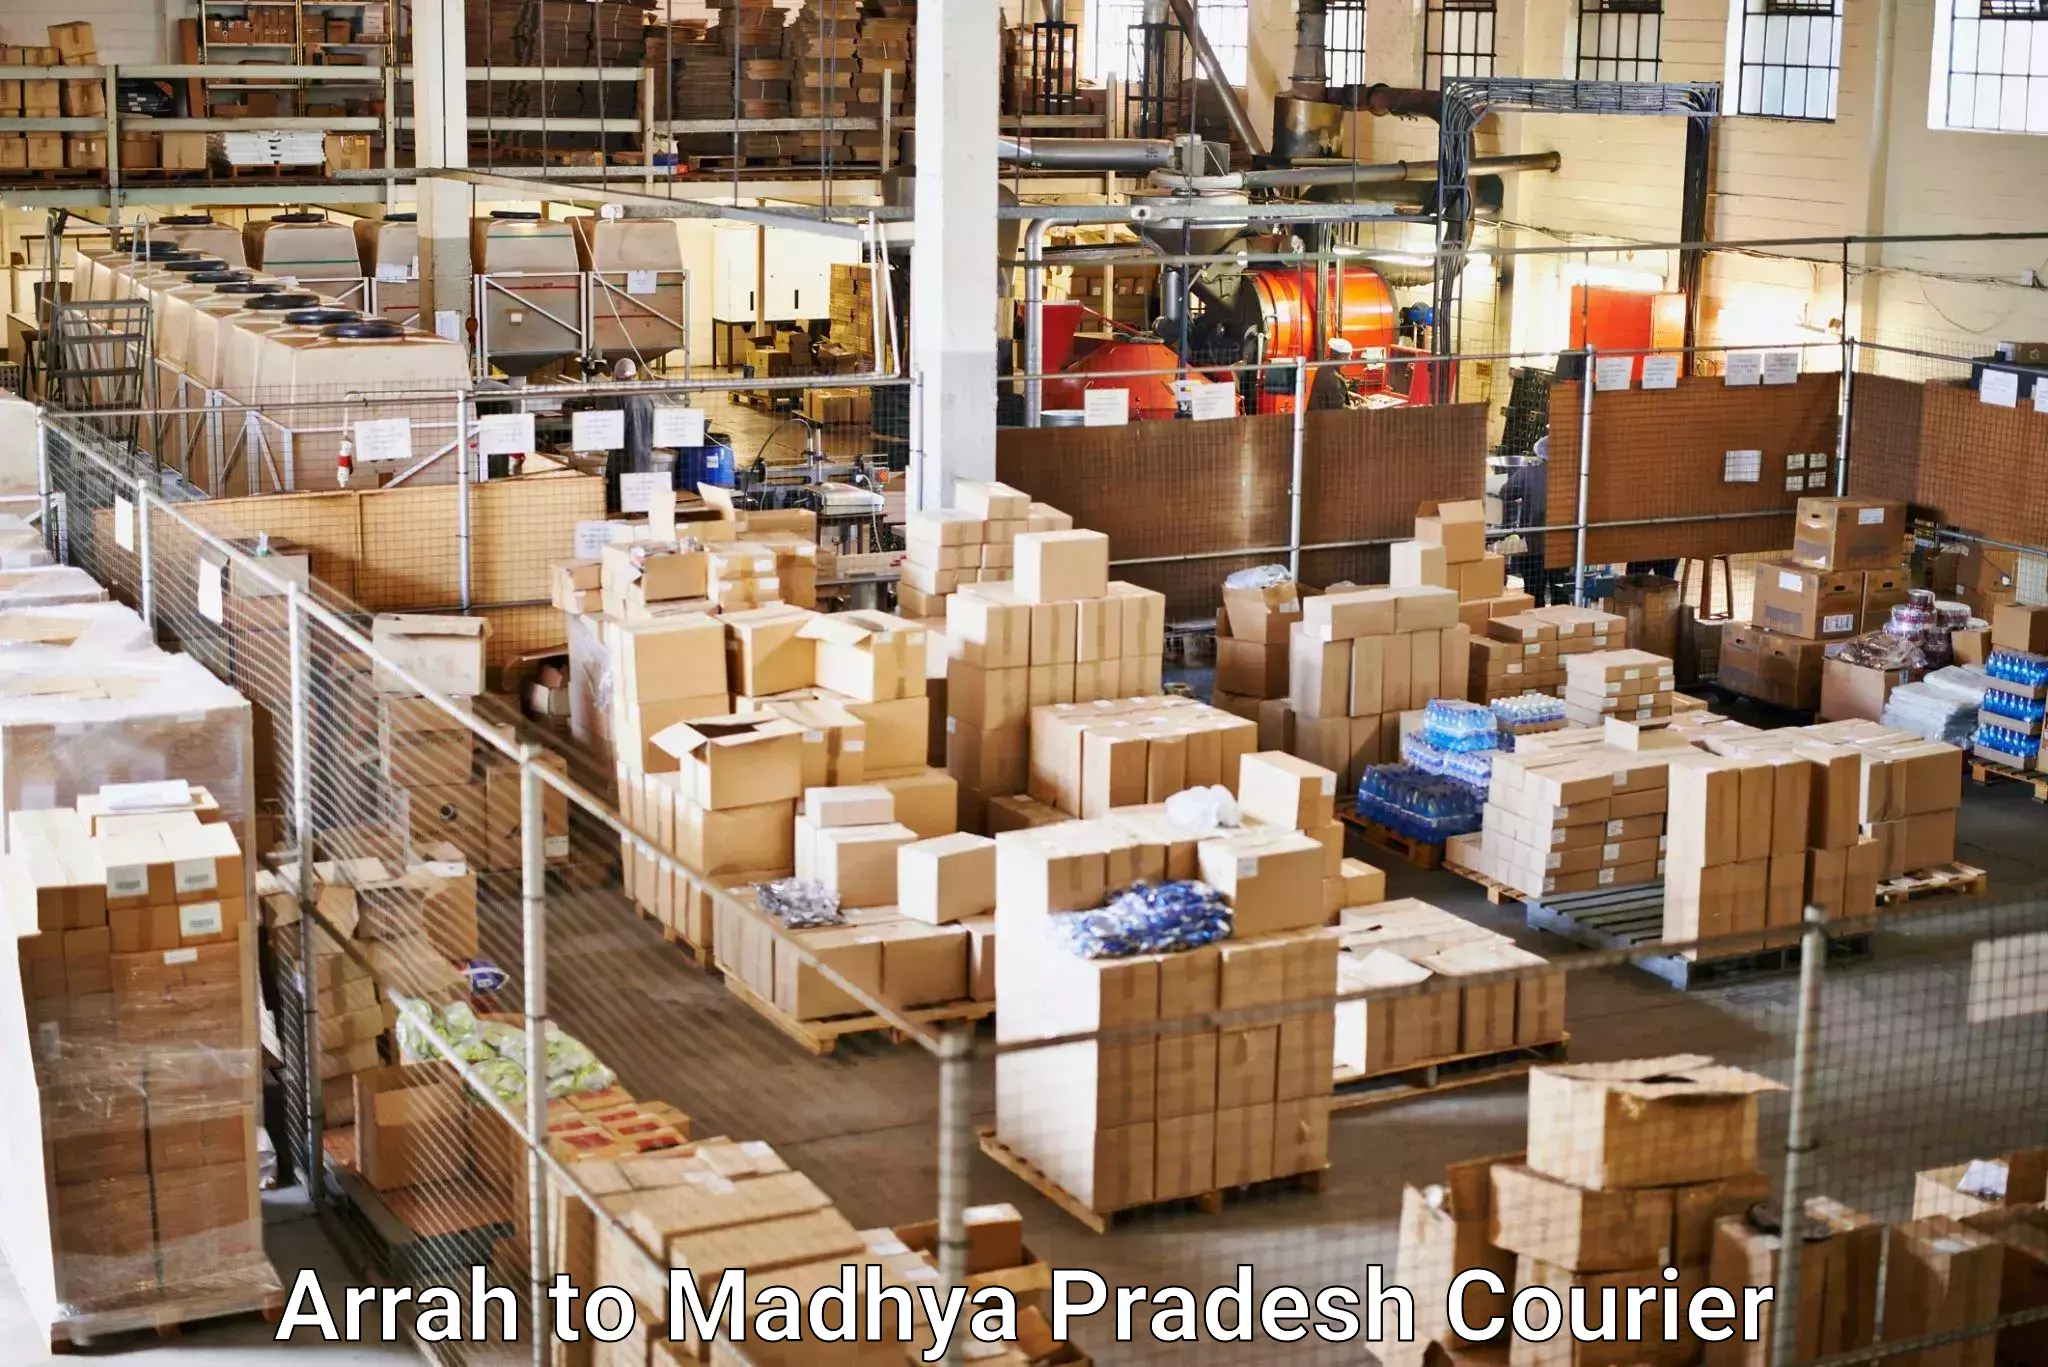 24-hour courier service Arrah to Vidisha